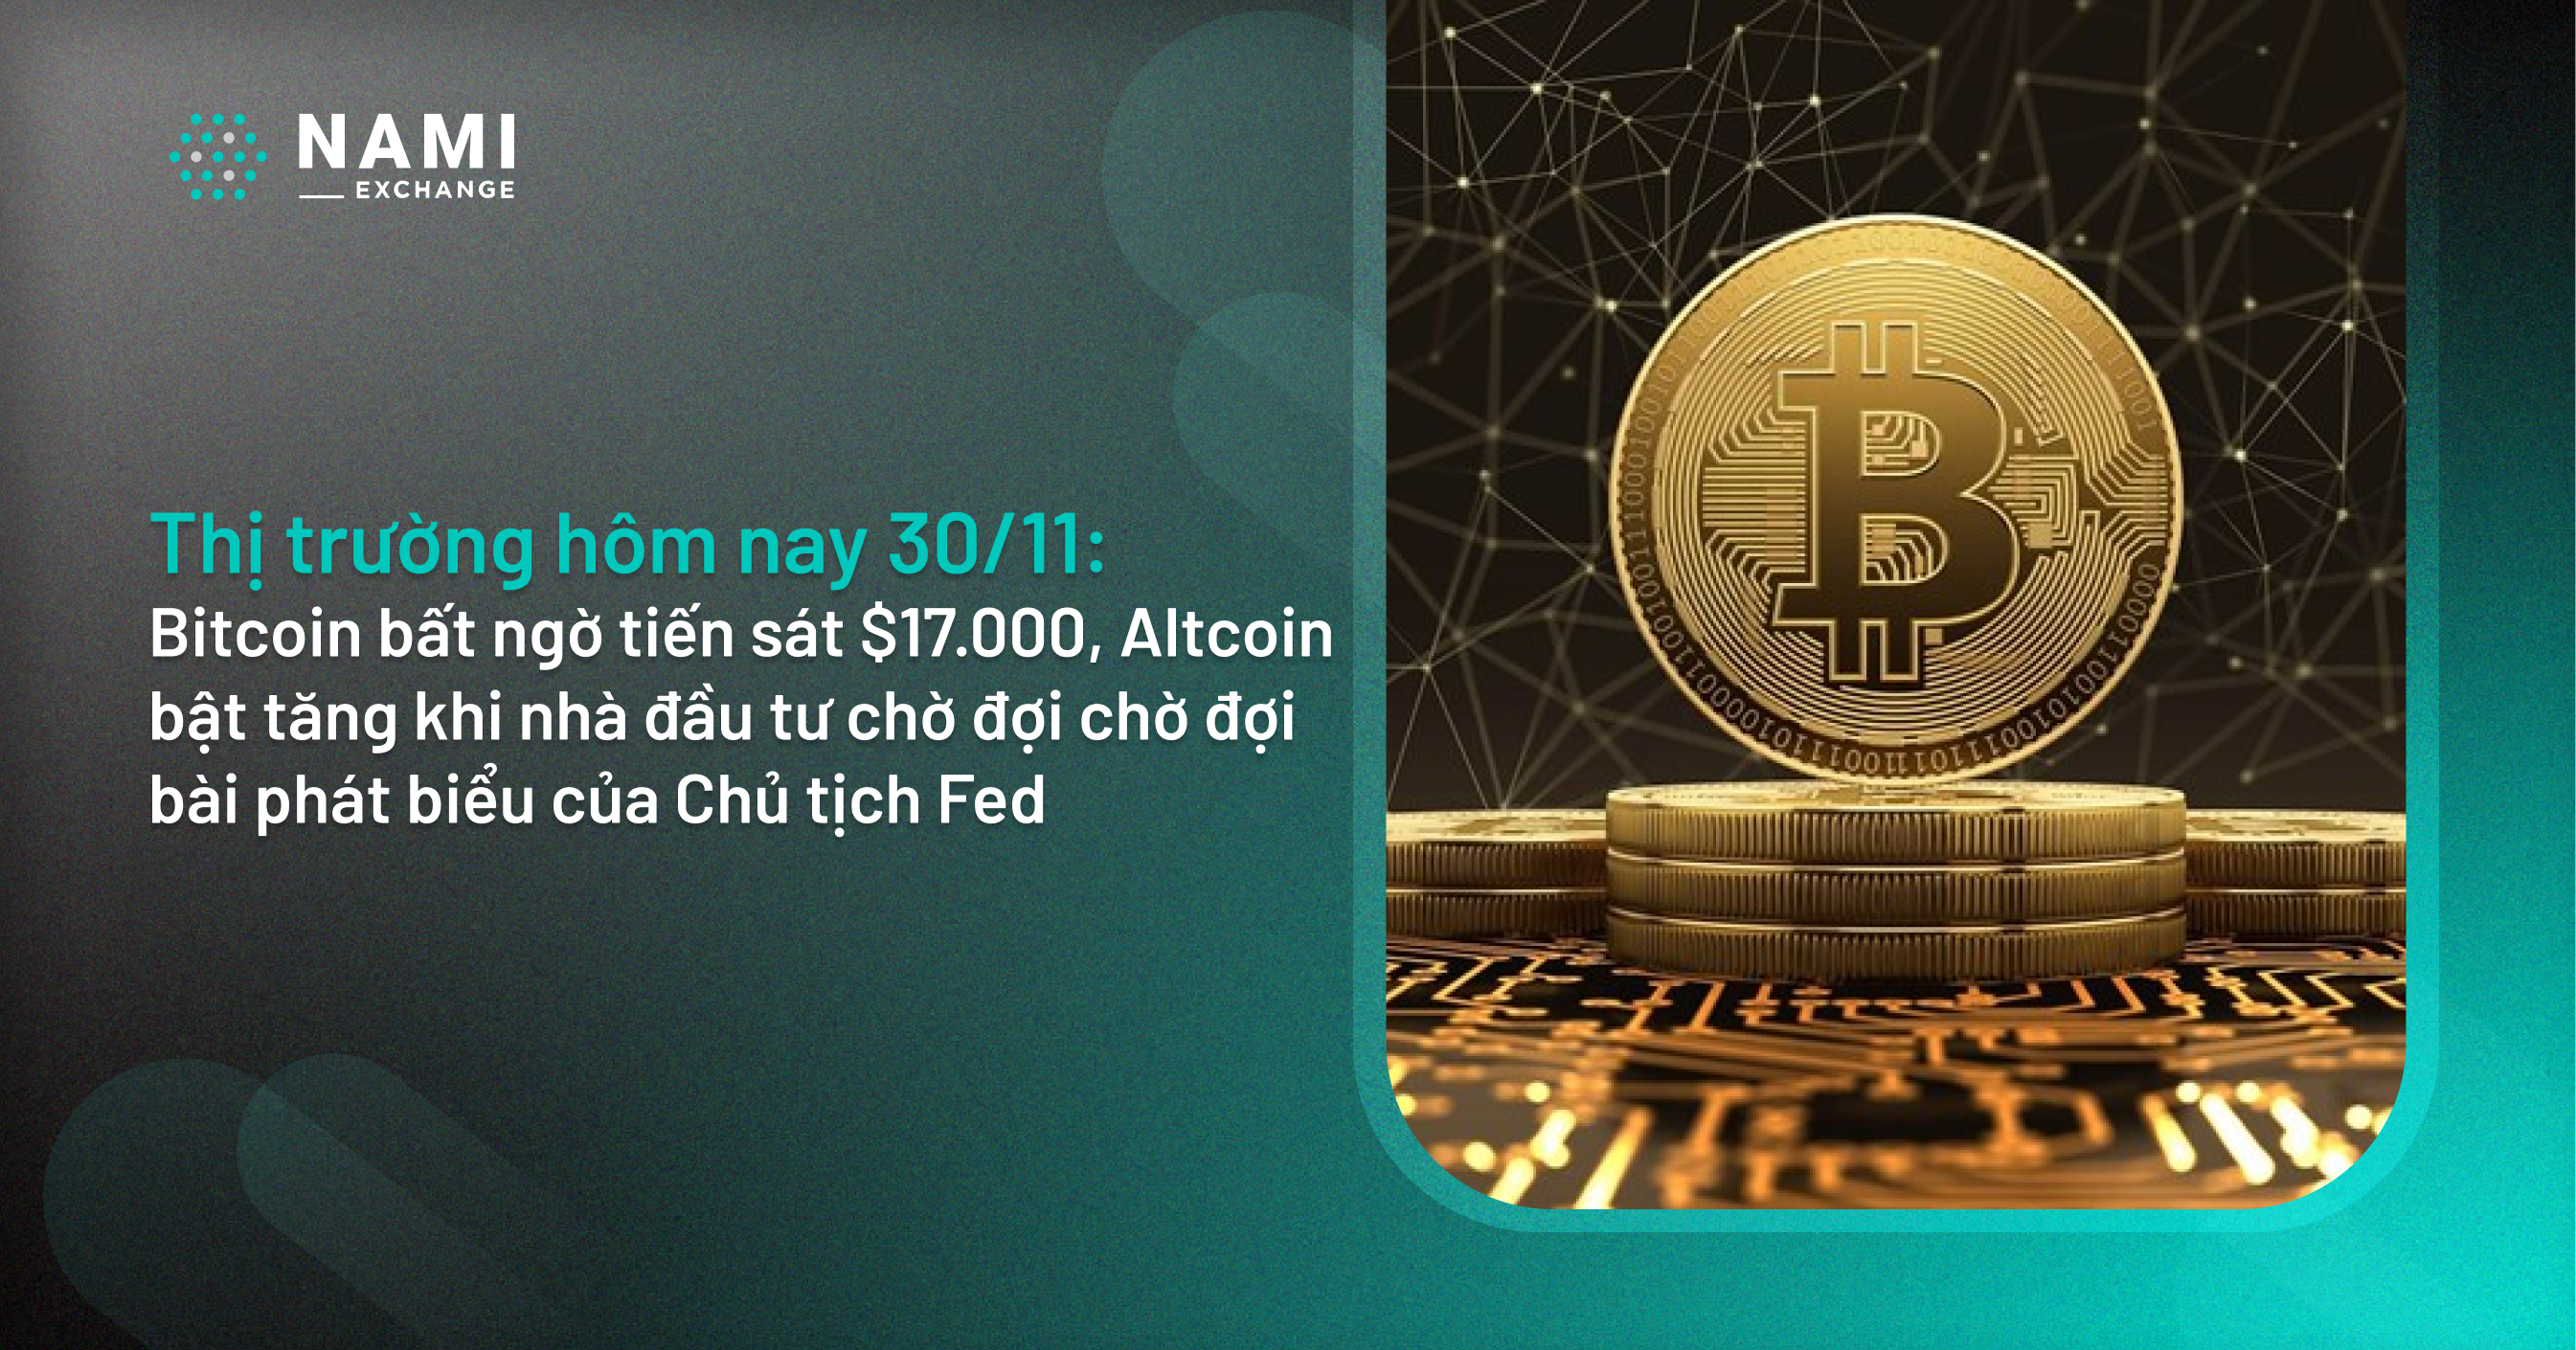 Giá Coin hôm nay 30/11: Bitcoin bất ngờ tiến sát $17.000, Altcoin bật tăng khi nhà đầu tư chờ đợi chờ đợi bài phát biểu của Chủ tịch Fed